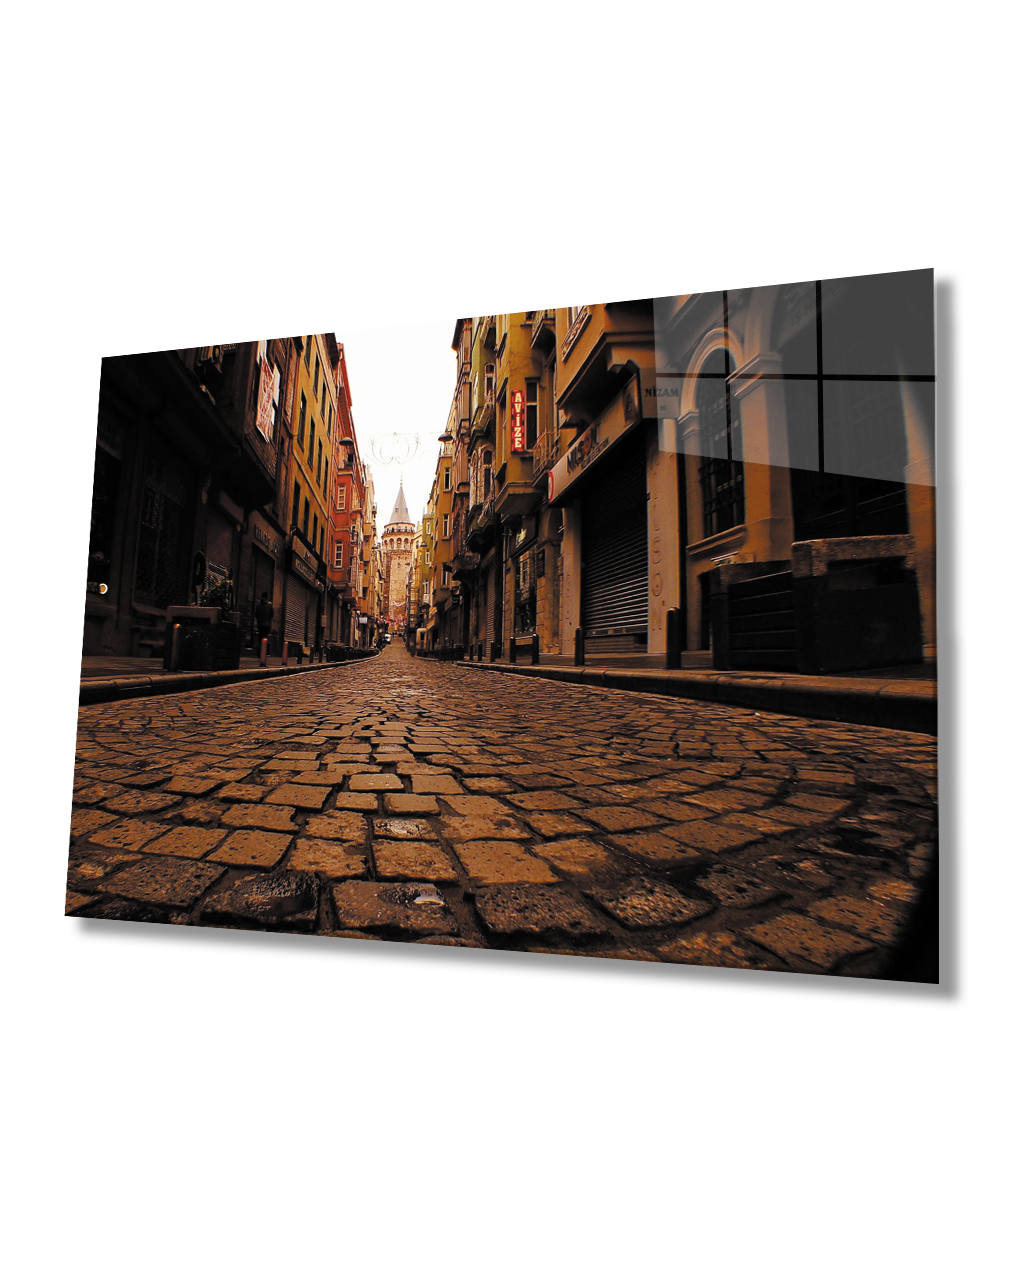 Arnavut Kaldırımlı Sokak Ve Galata Manzaralı 4mm Dayanıklı  Cam Tablo Temperli Cam